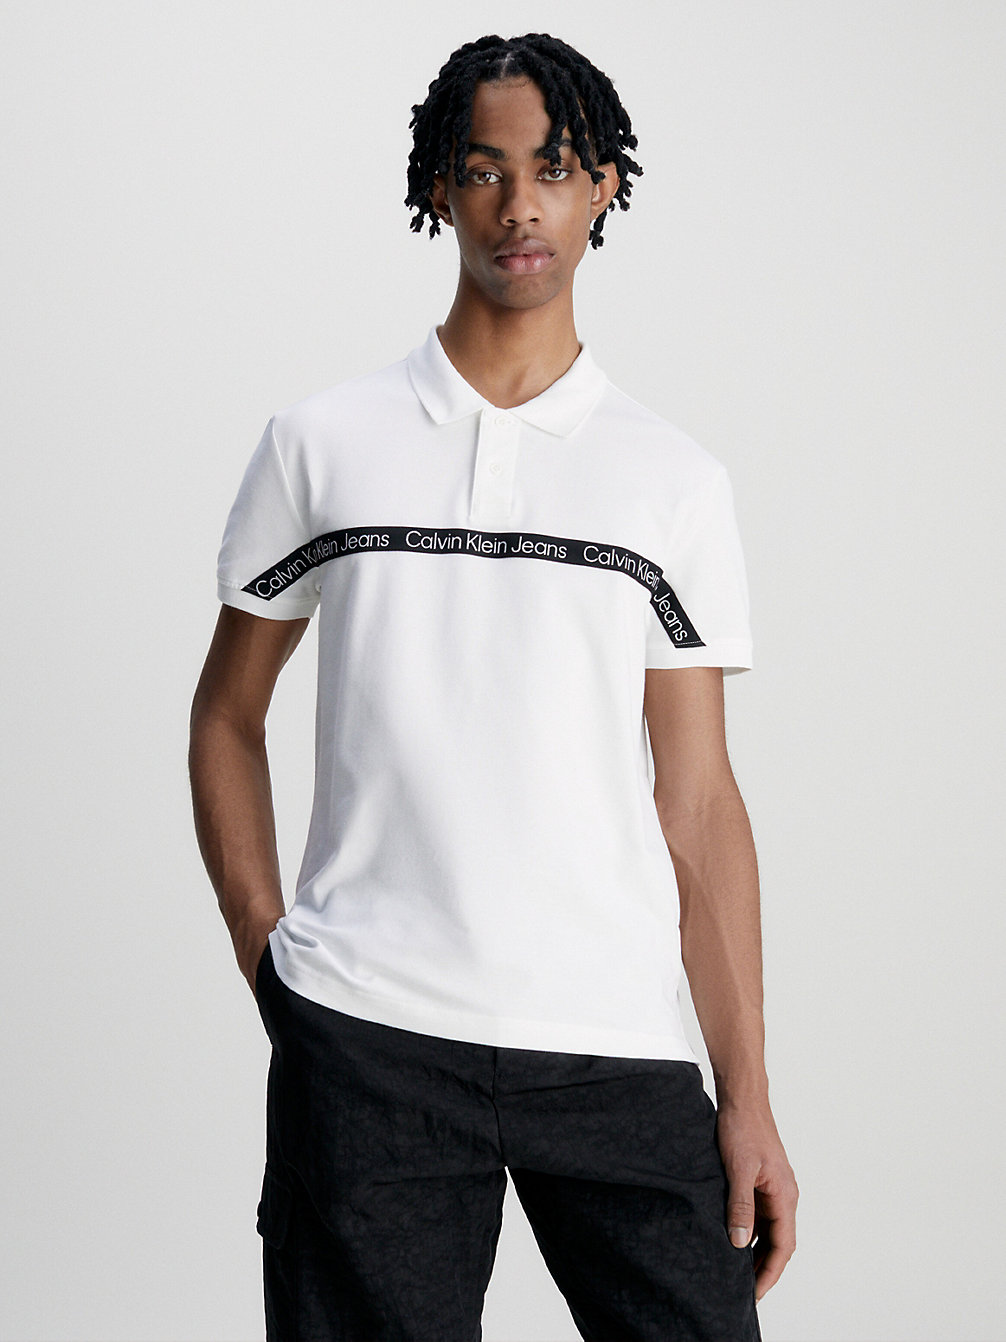 BRIGHT WHITE Poloshirt Mit Logo Tape undefined Herren Calvin Klein